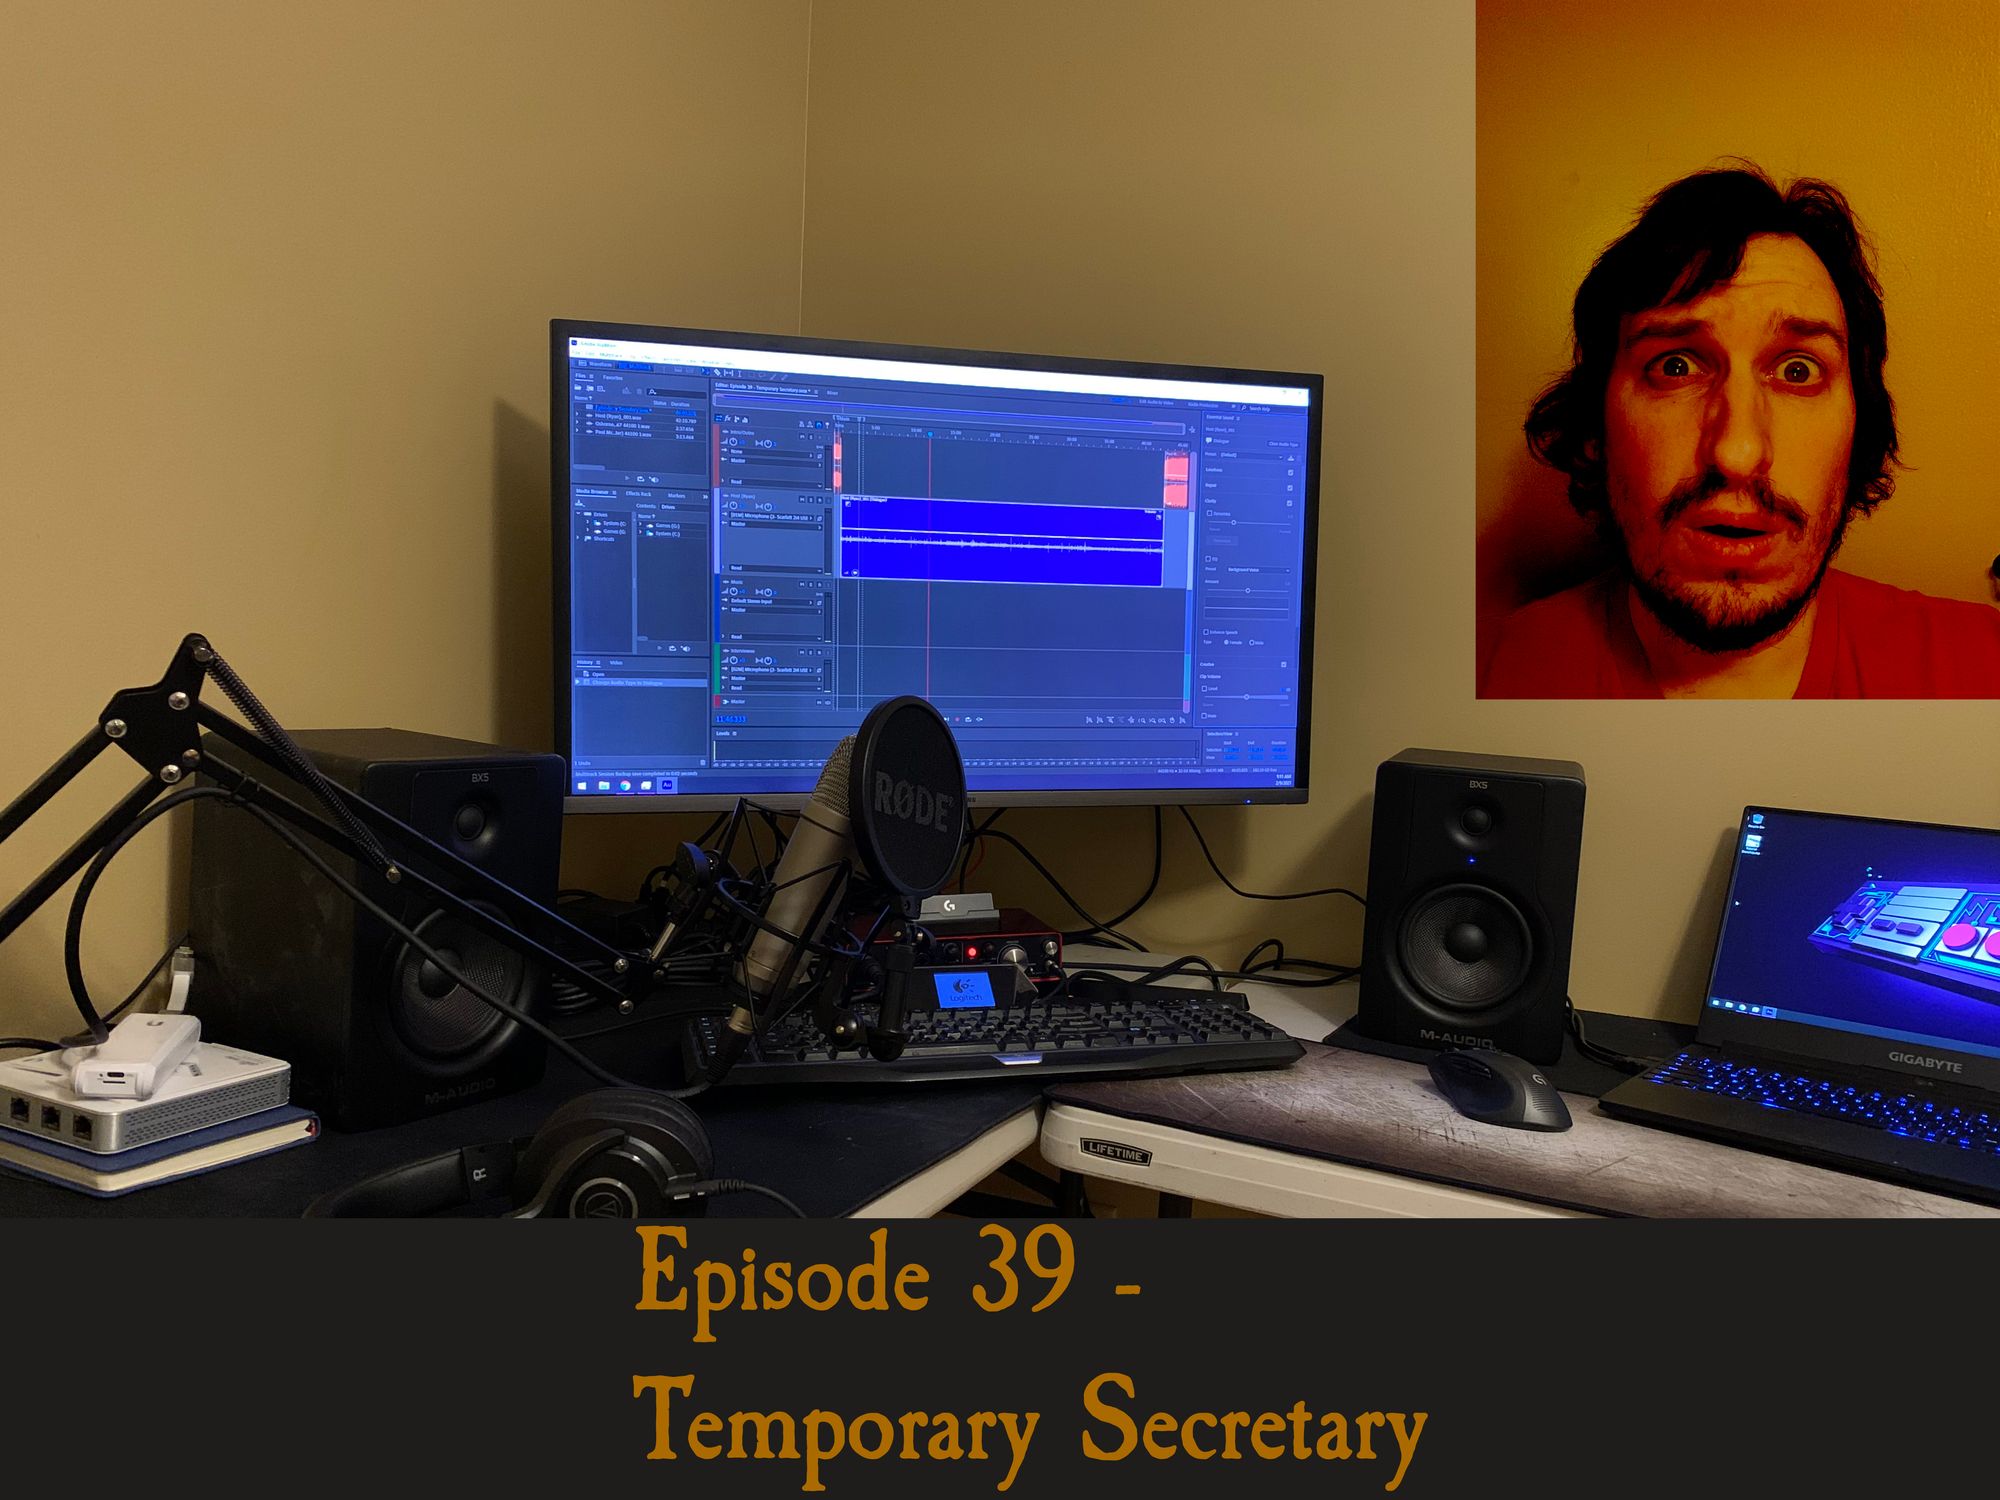 Episode 39 - Temporary Secretary